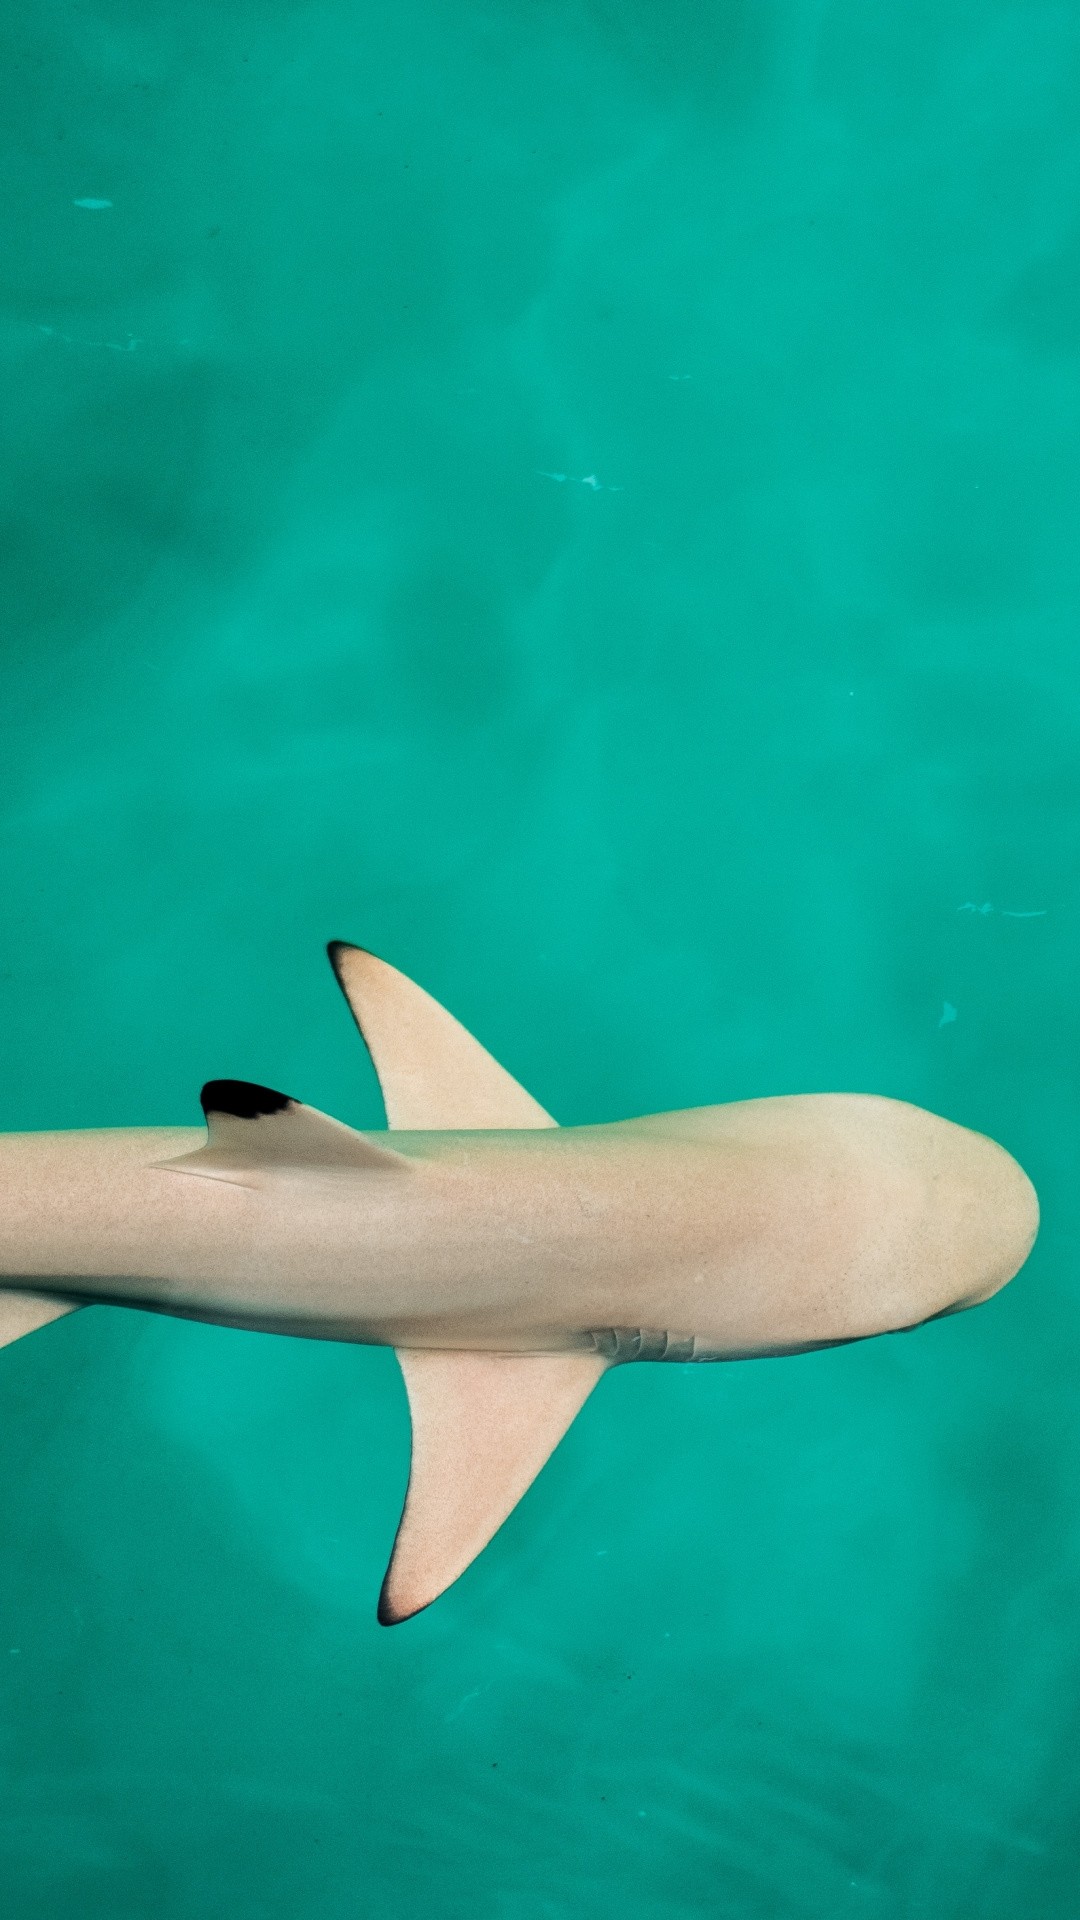 Shark iPhone hd wallpaper